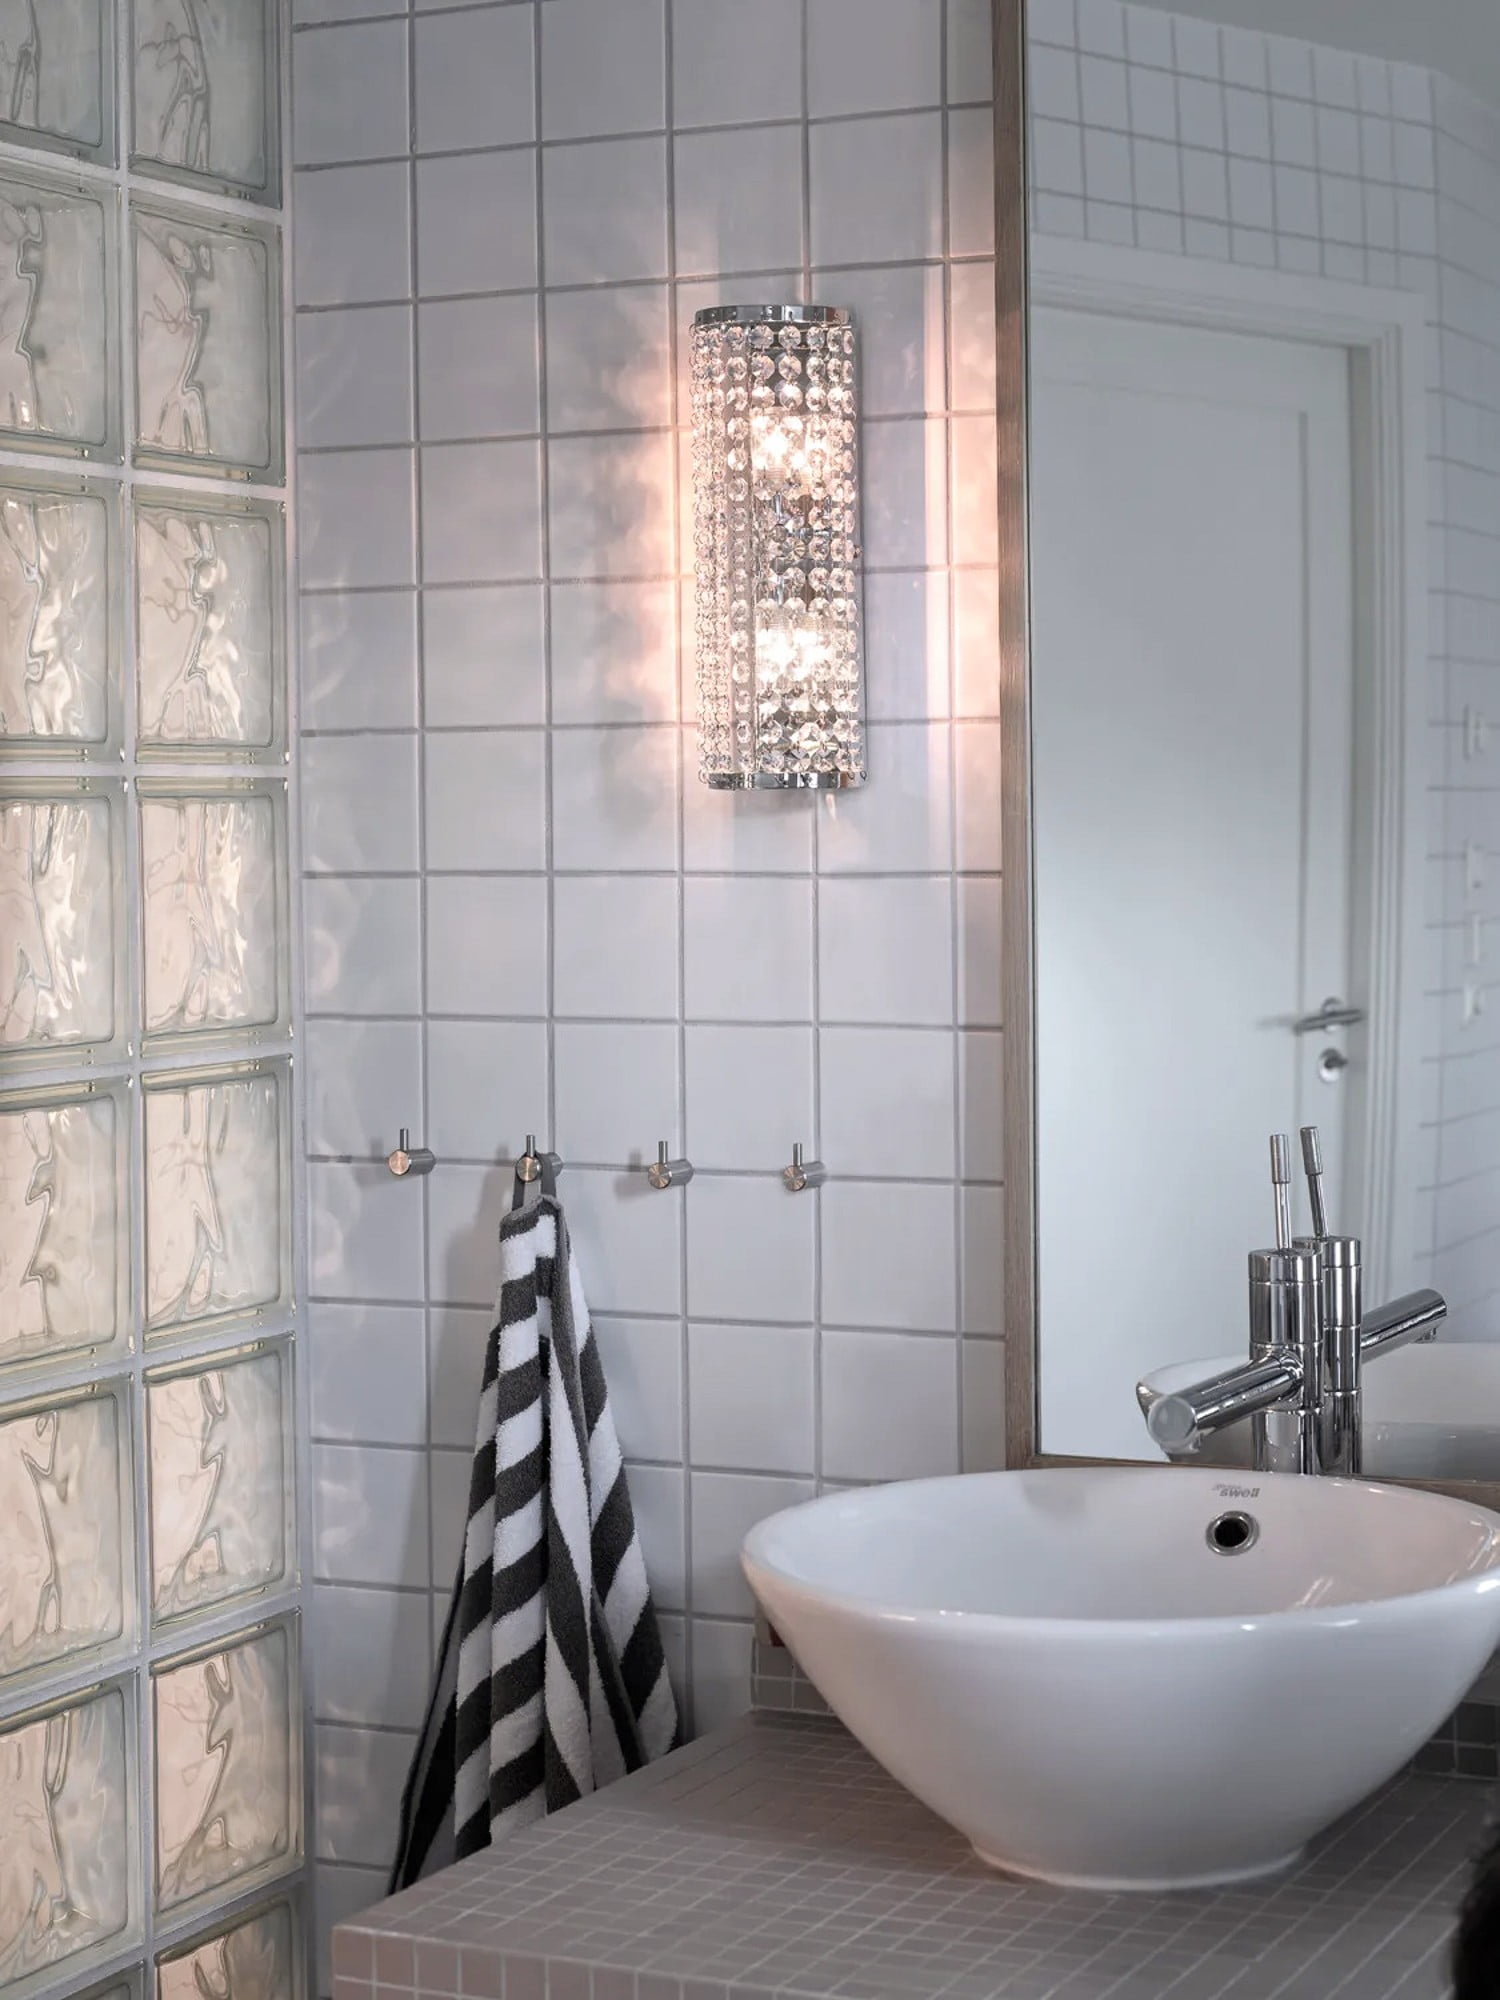 Iluminare baie: corp de iluminat pentru o baie în stil glamour